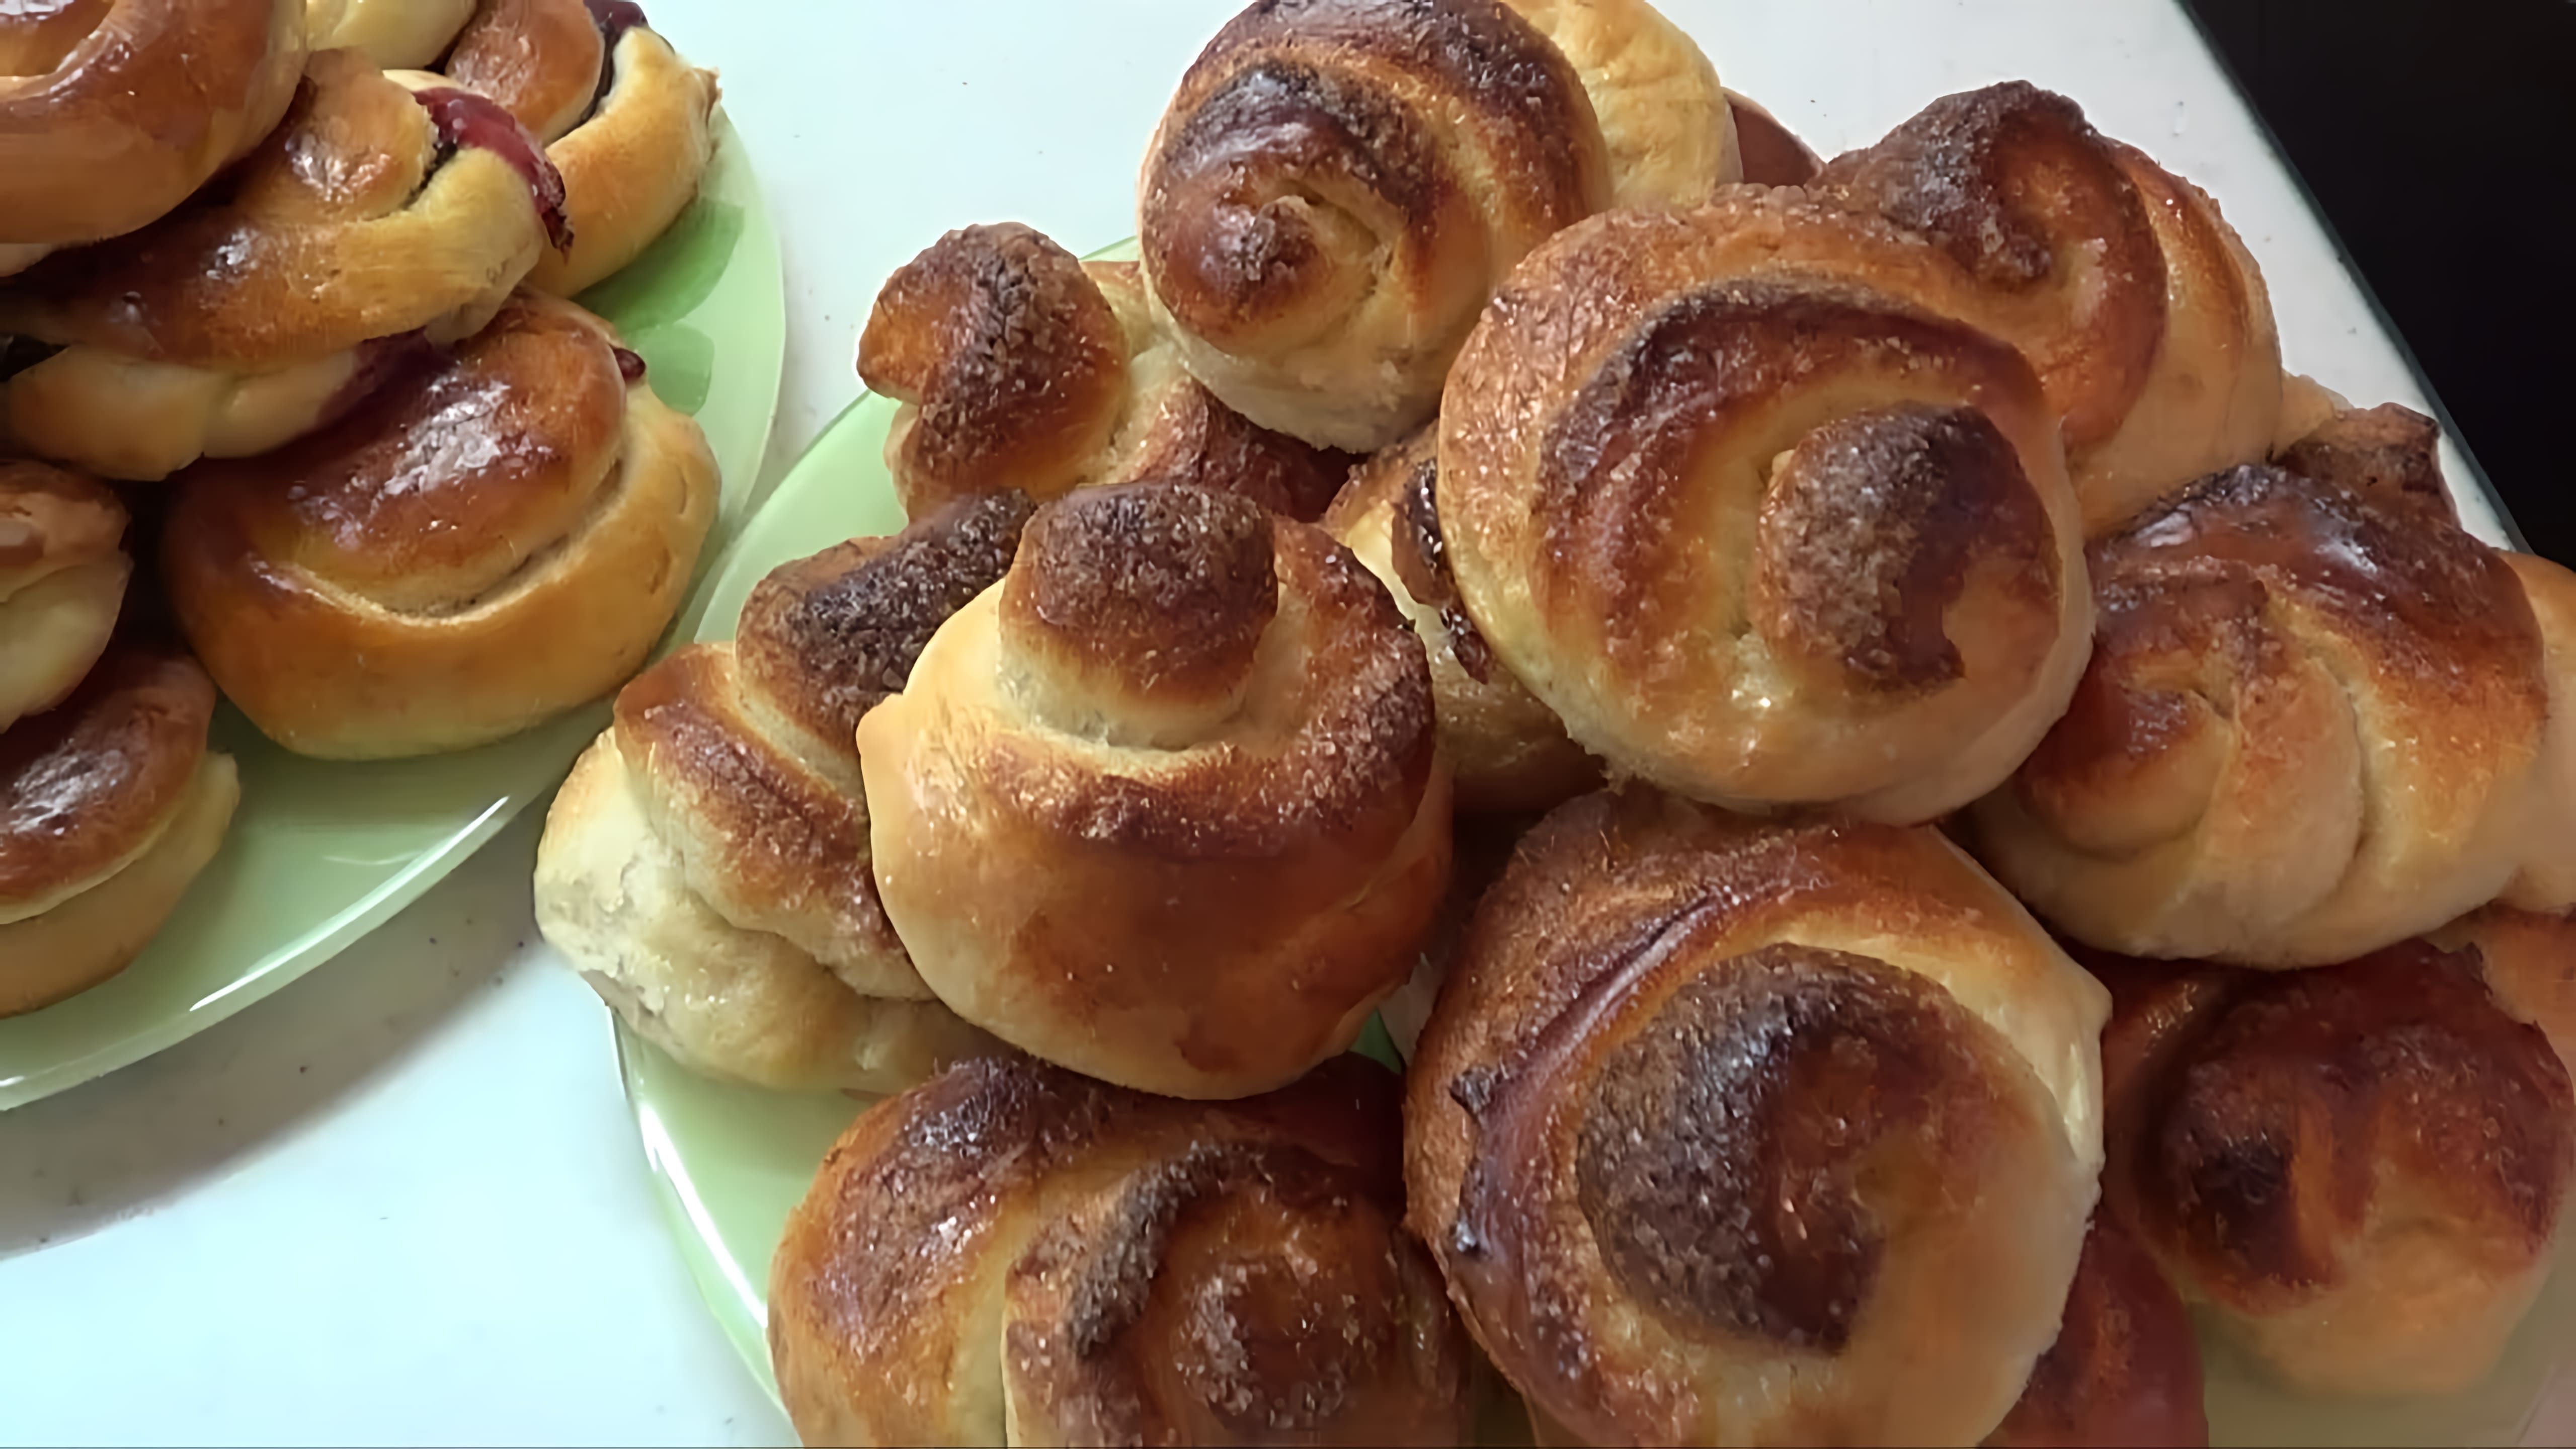 В этом видео демонстрируется процесс приготовления булочек с использованием теста для дрожжевого хлеба в хлебопечке